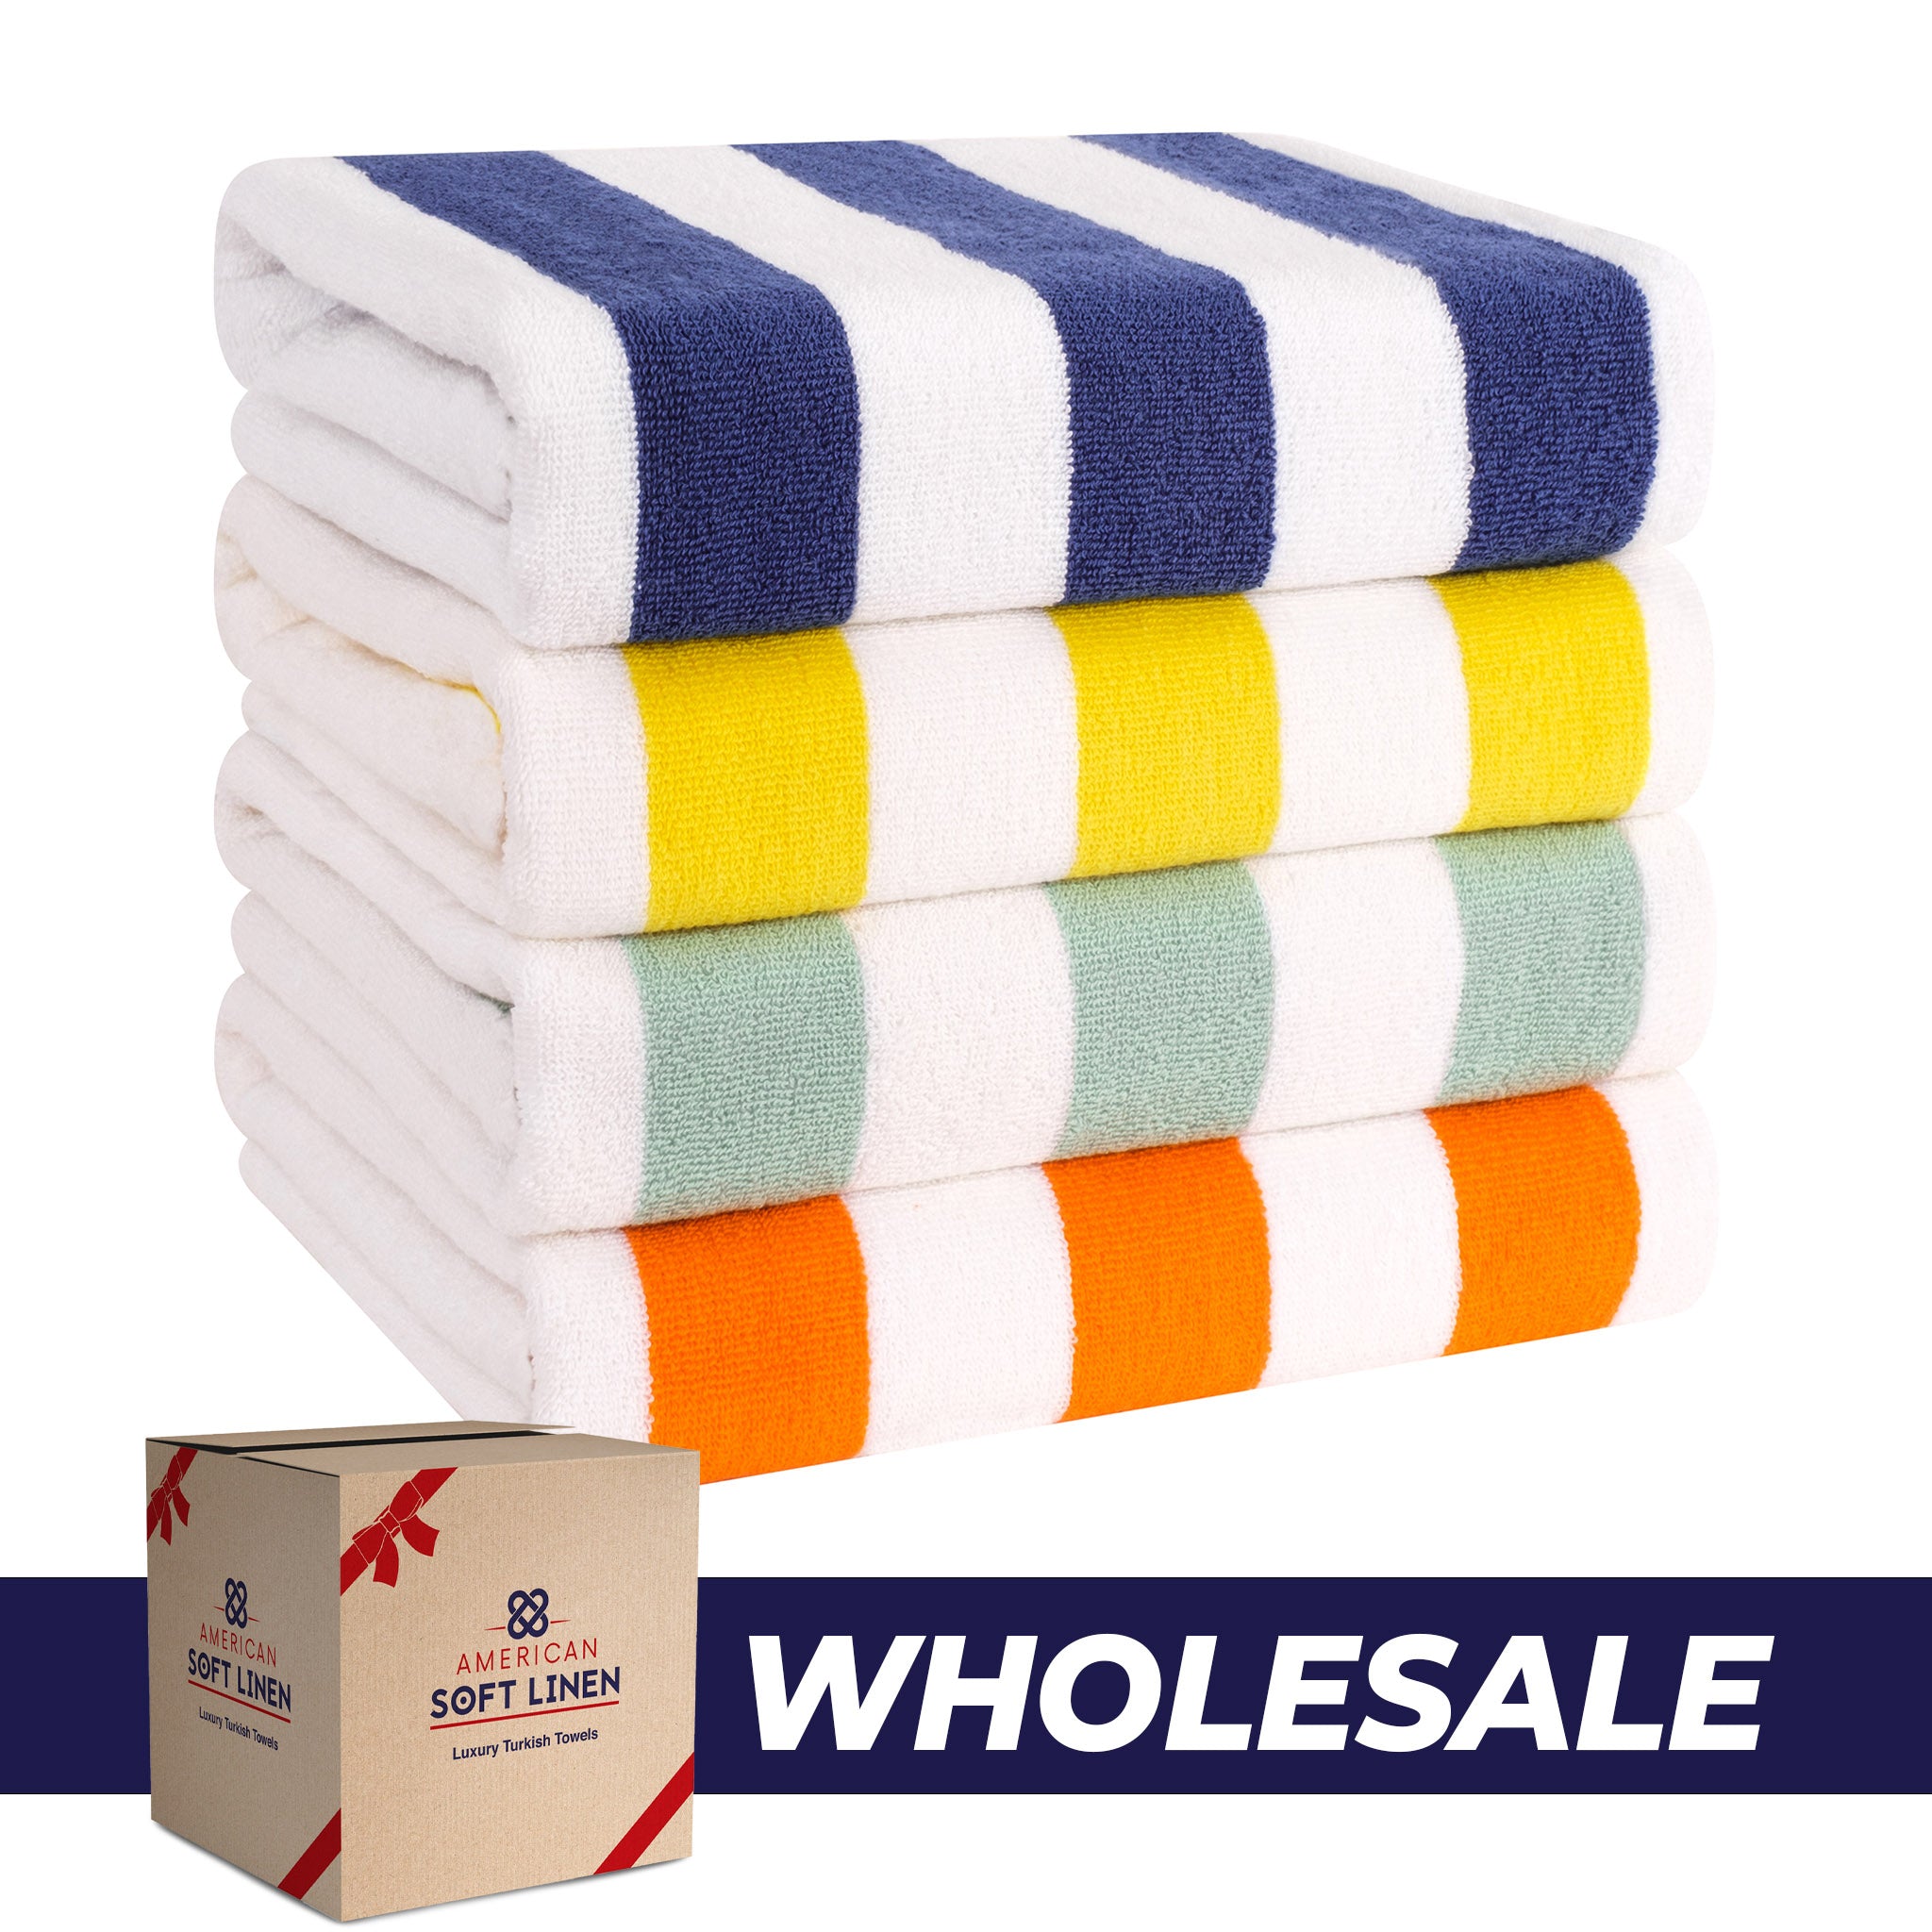 https://americansoftlinen.com/cdn/shop/files/american-soft-linen-cabana-striped-4-pack-cotton-beach-towels-30x60-8-set-case-pack-mix-0.jpg?v=1702898875&width=2048